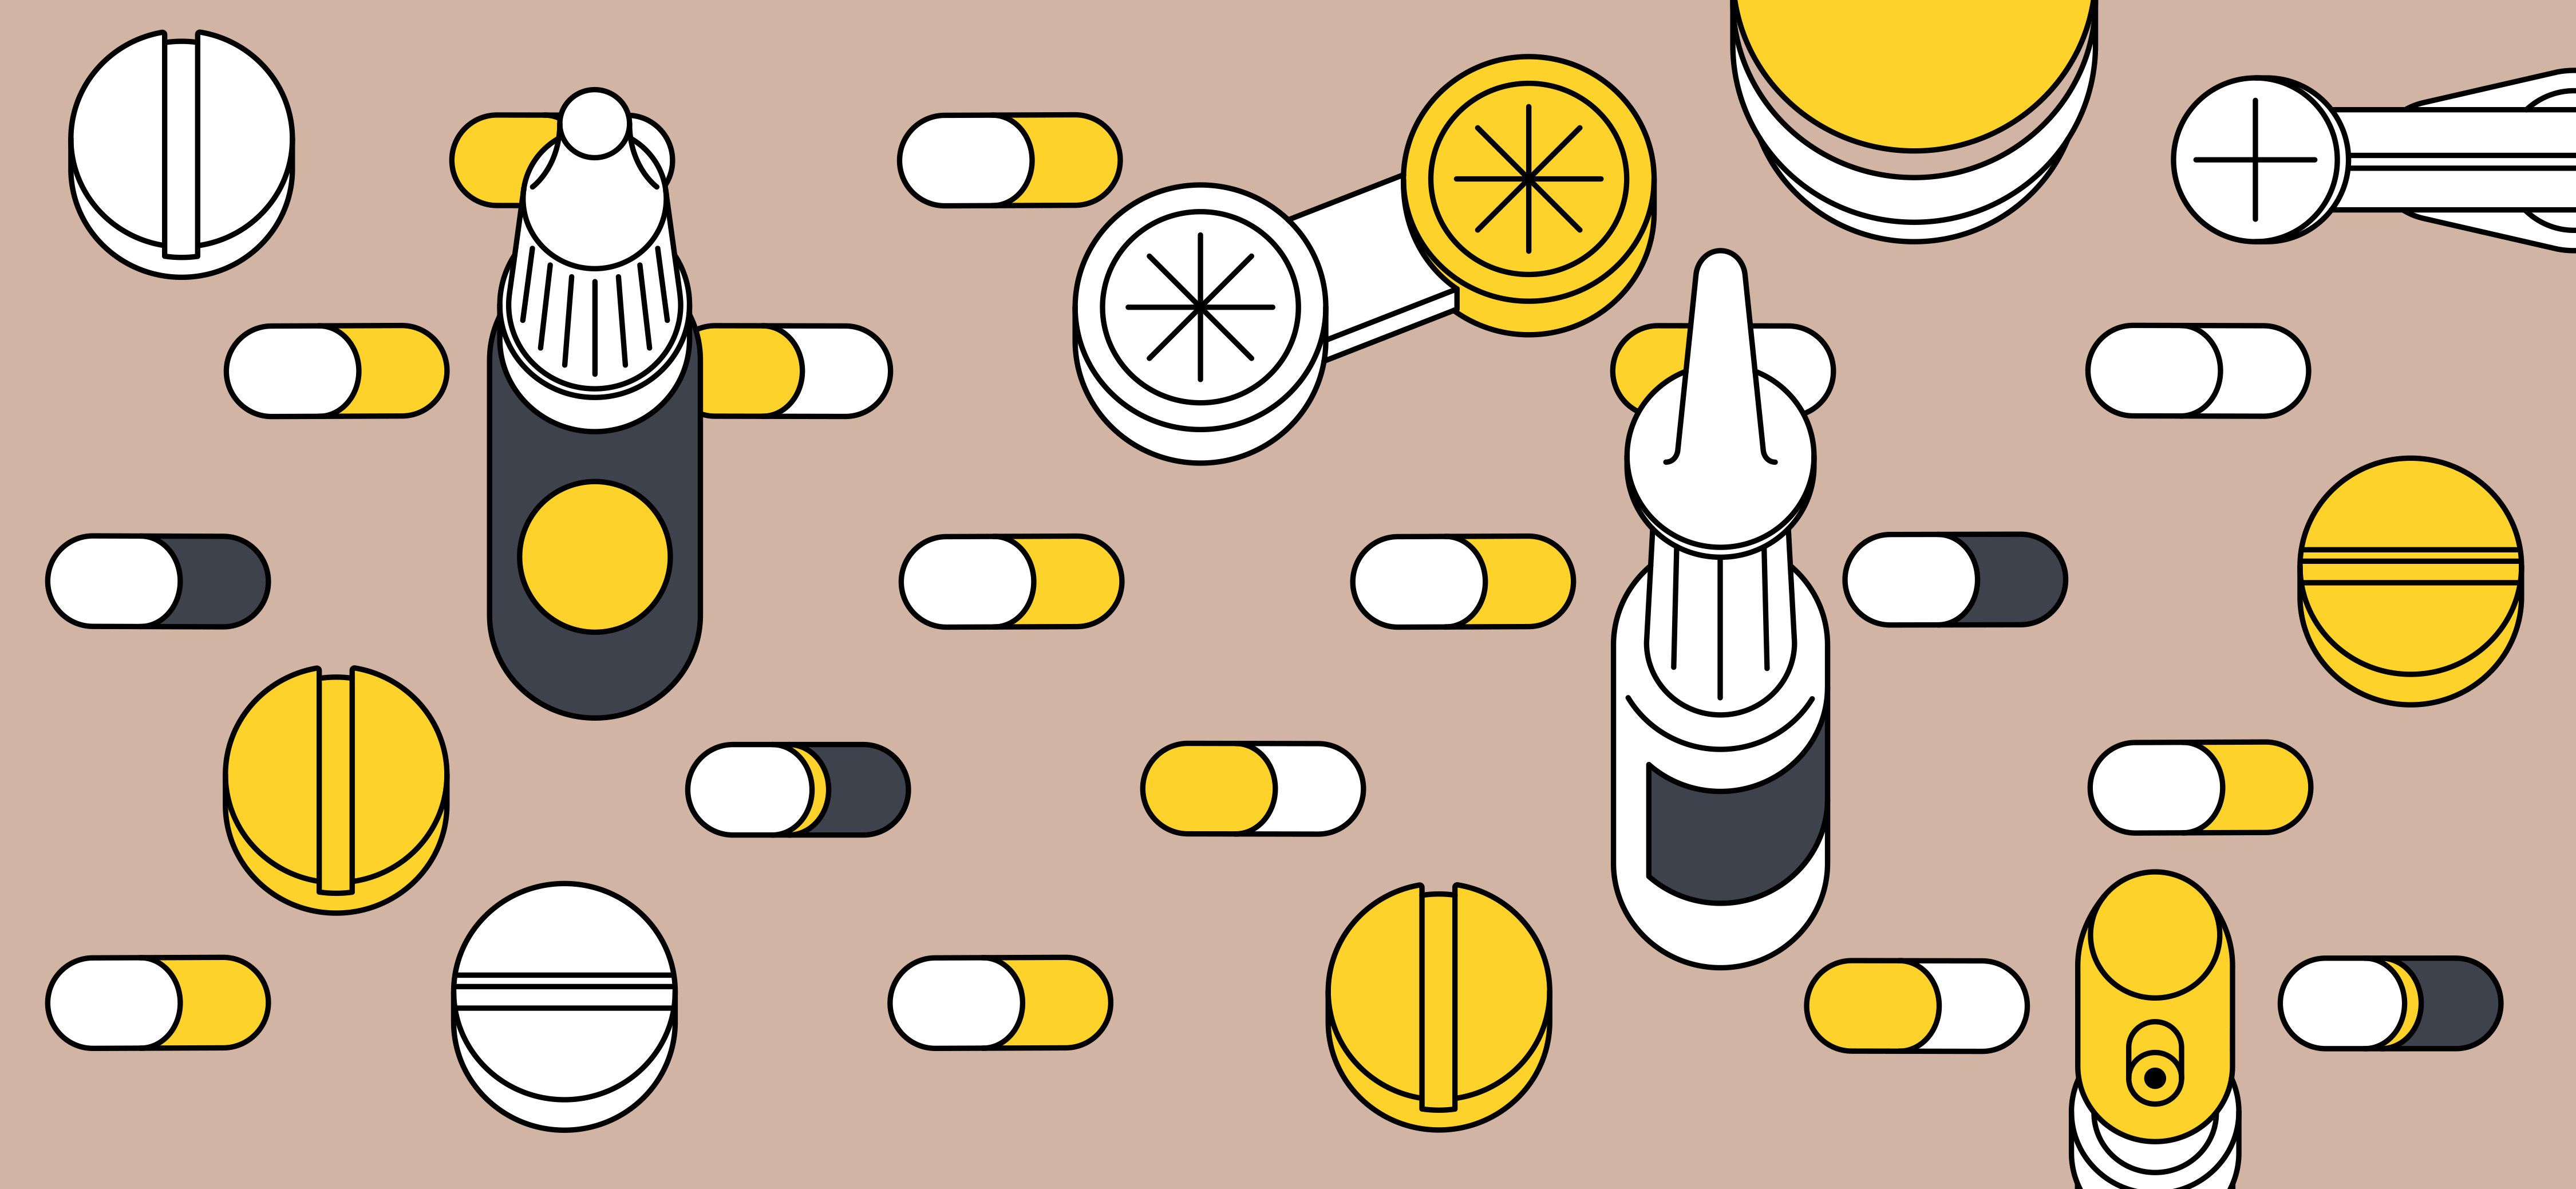 Как продавать лекарства на маркетплейсе: 5 советов от опытных продавцов